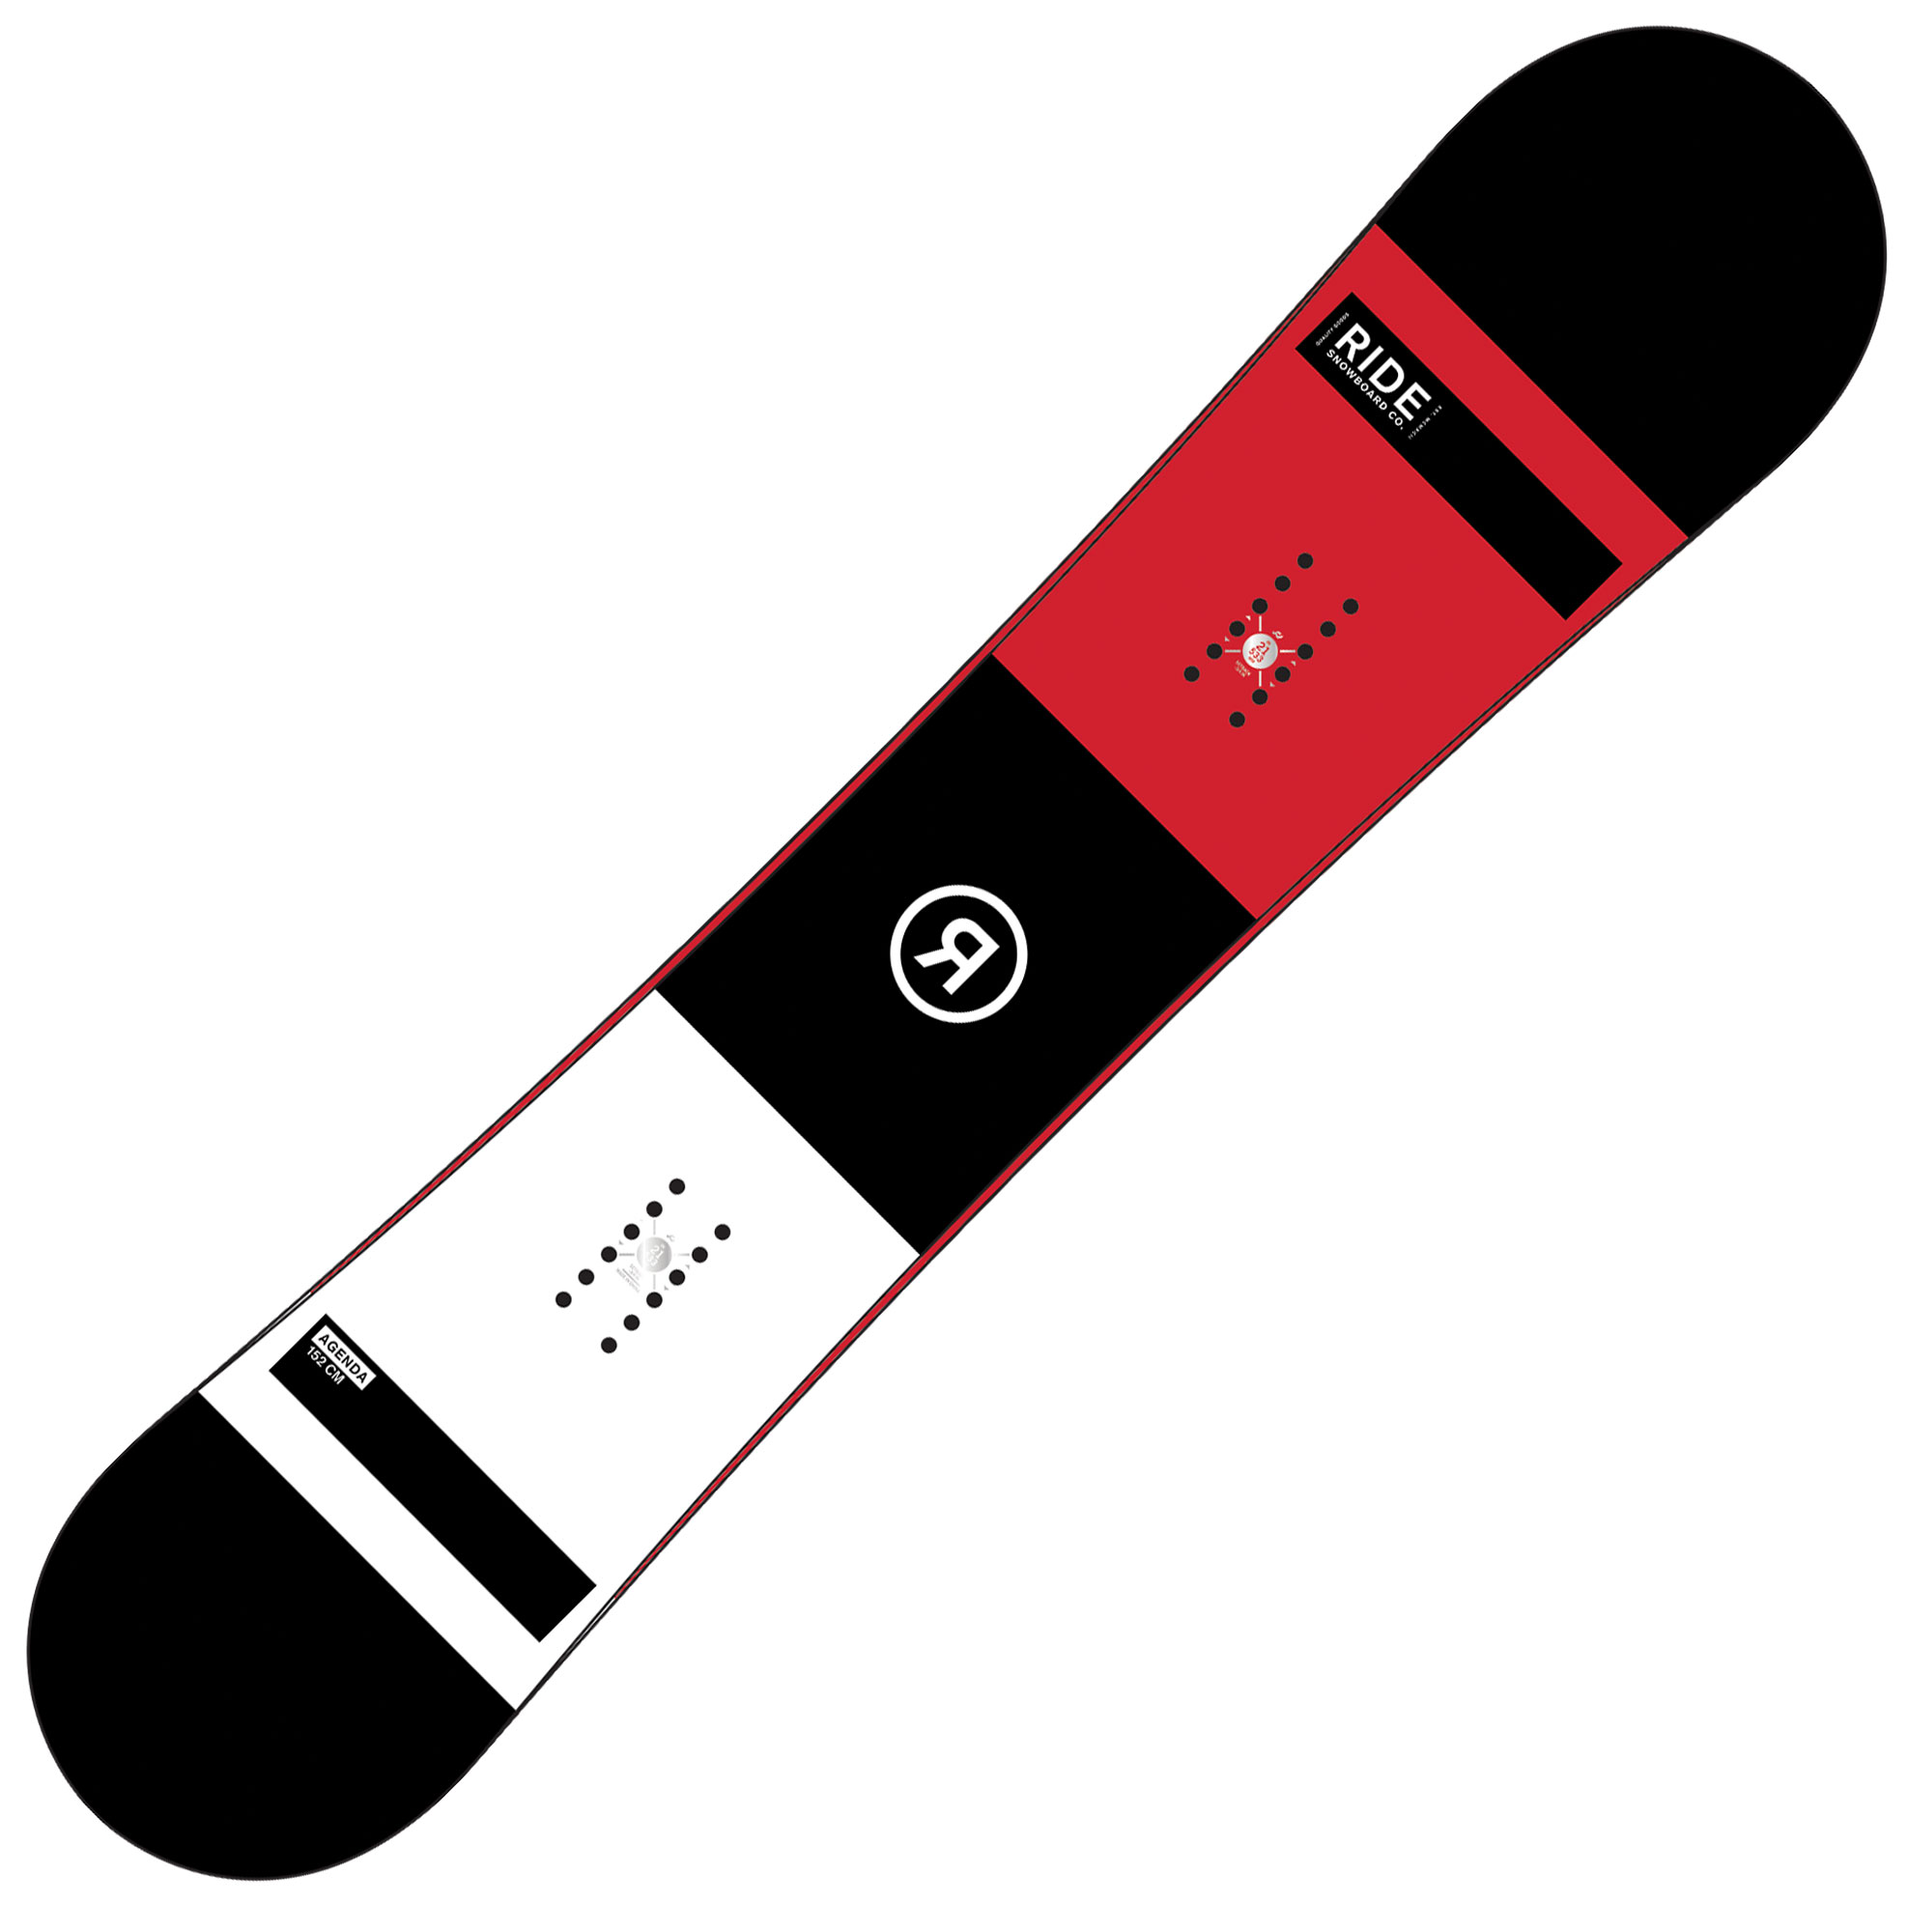 Men’s snowboard